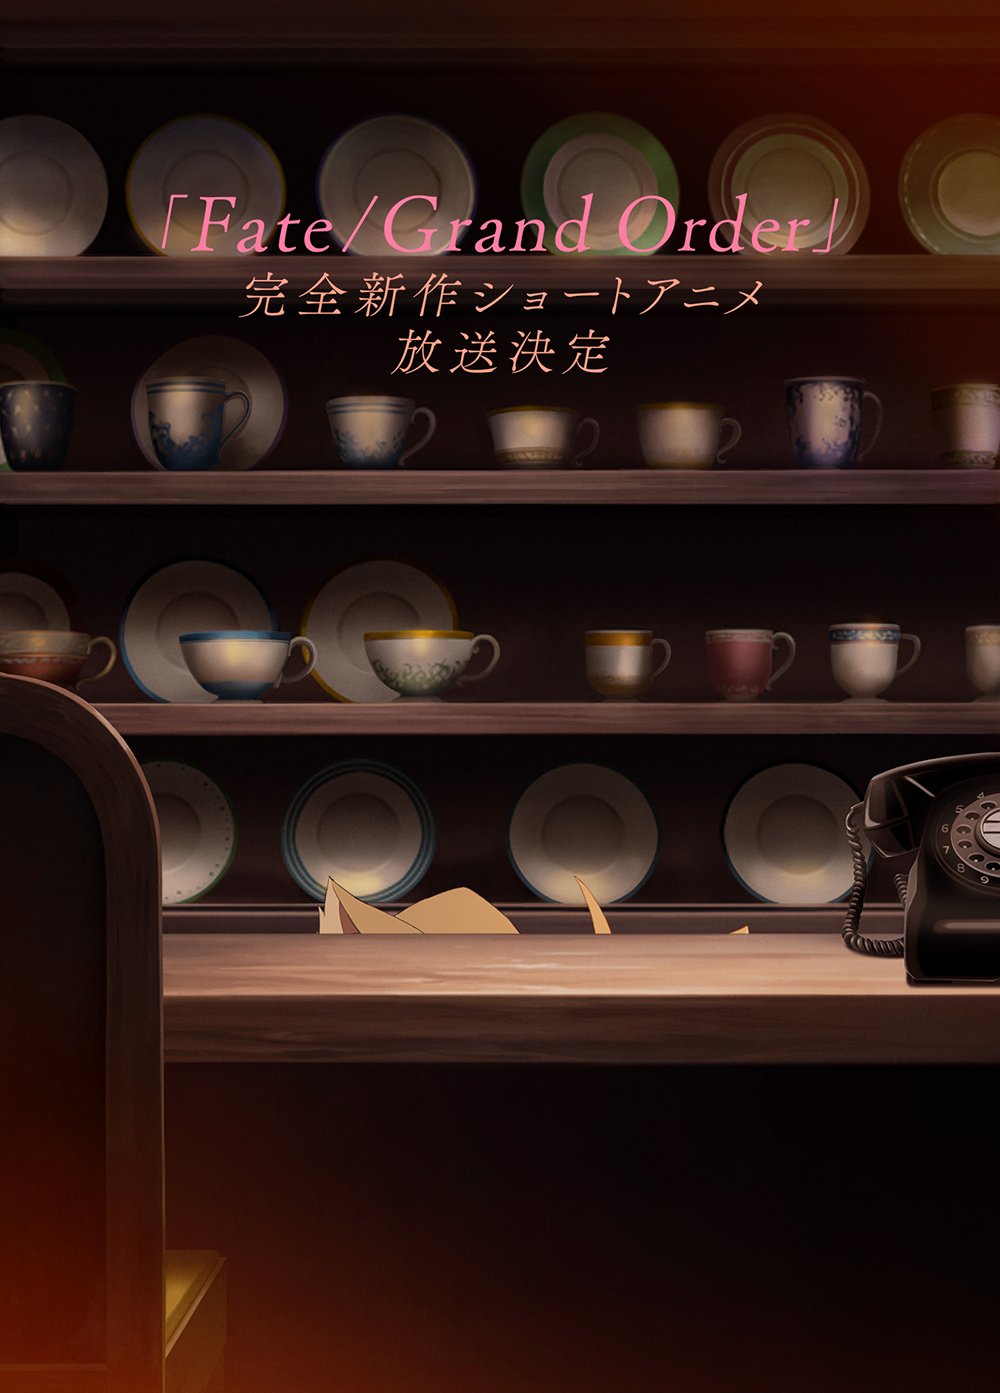 Curta de Anime Fate / Grand Order no Especial de TV 2020 do Fate Project